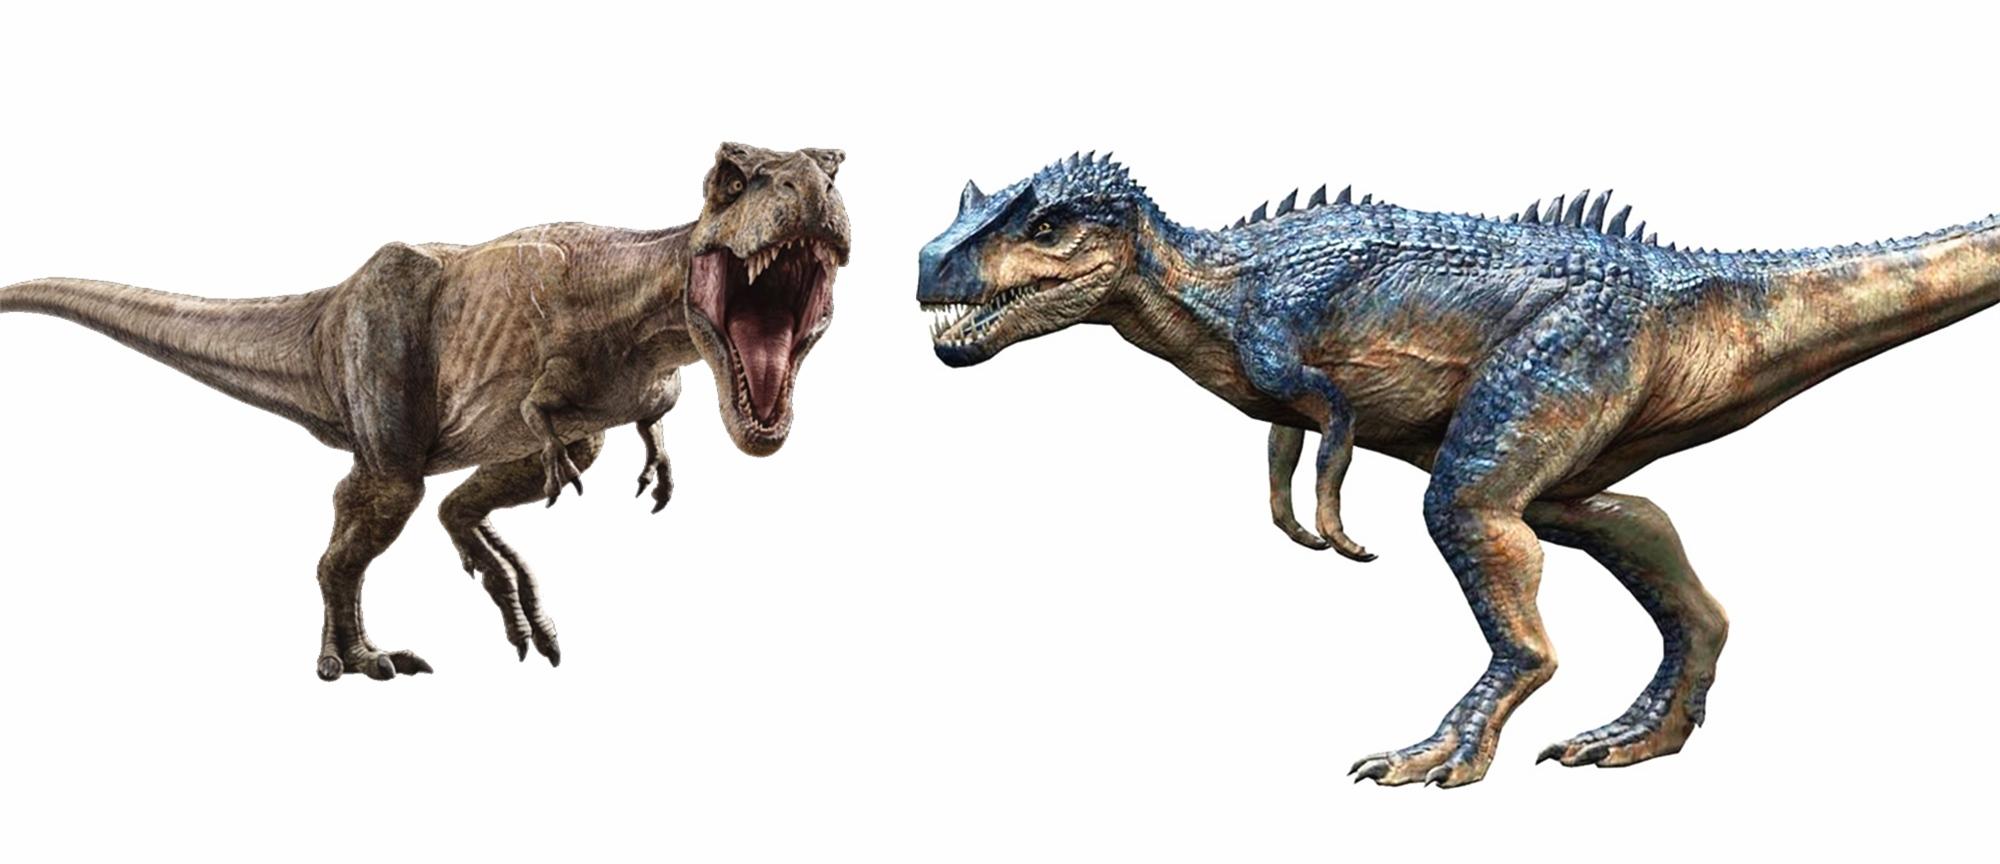 《侏罗纪世界》系列异特龙对比,霸王龙是假王,它才是侏罗纪霸主